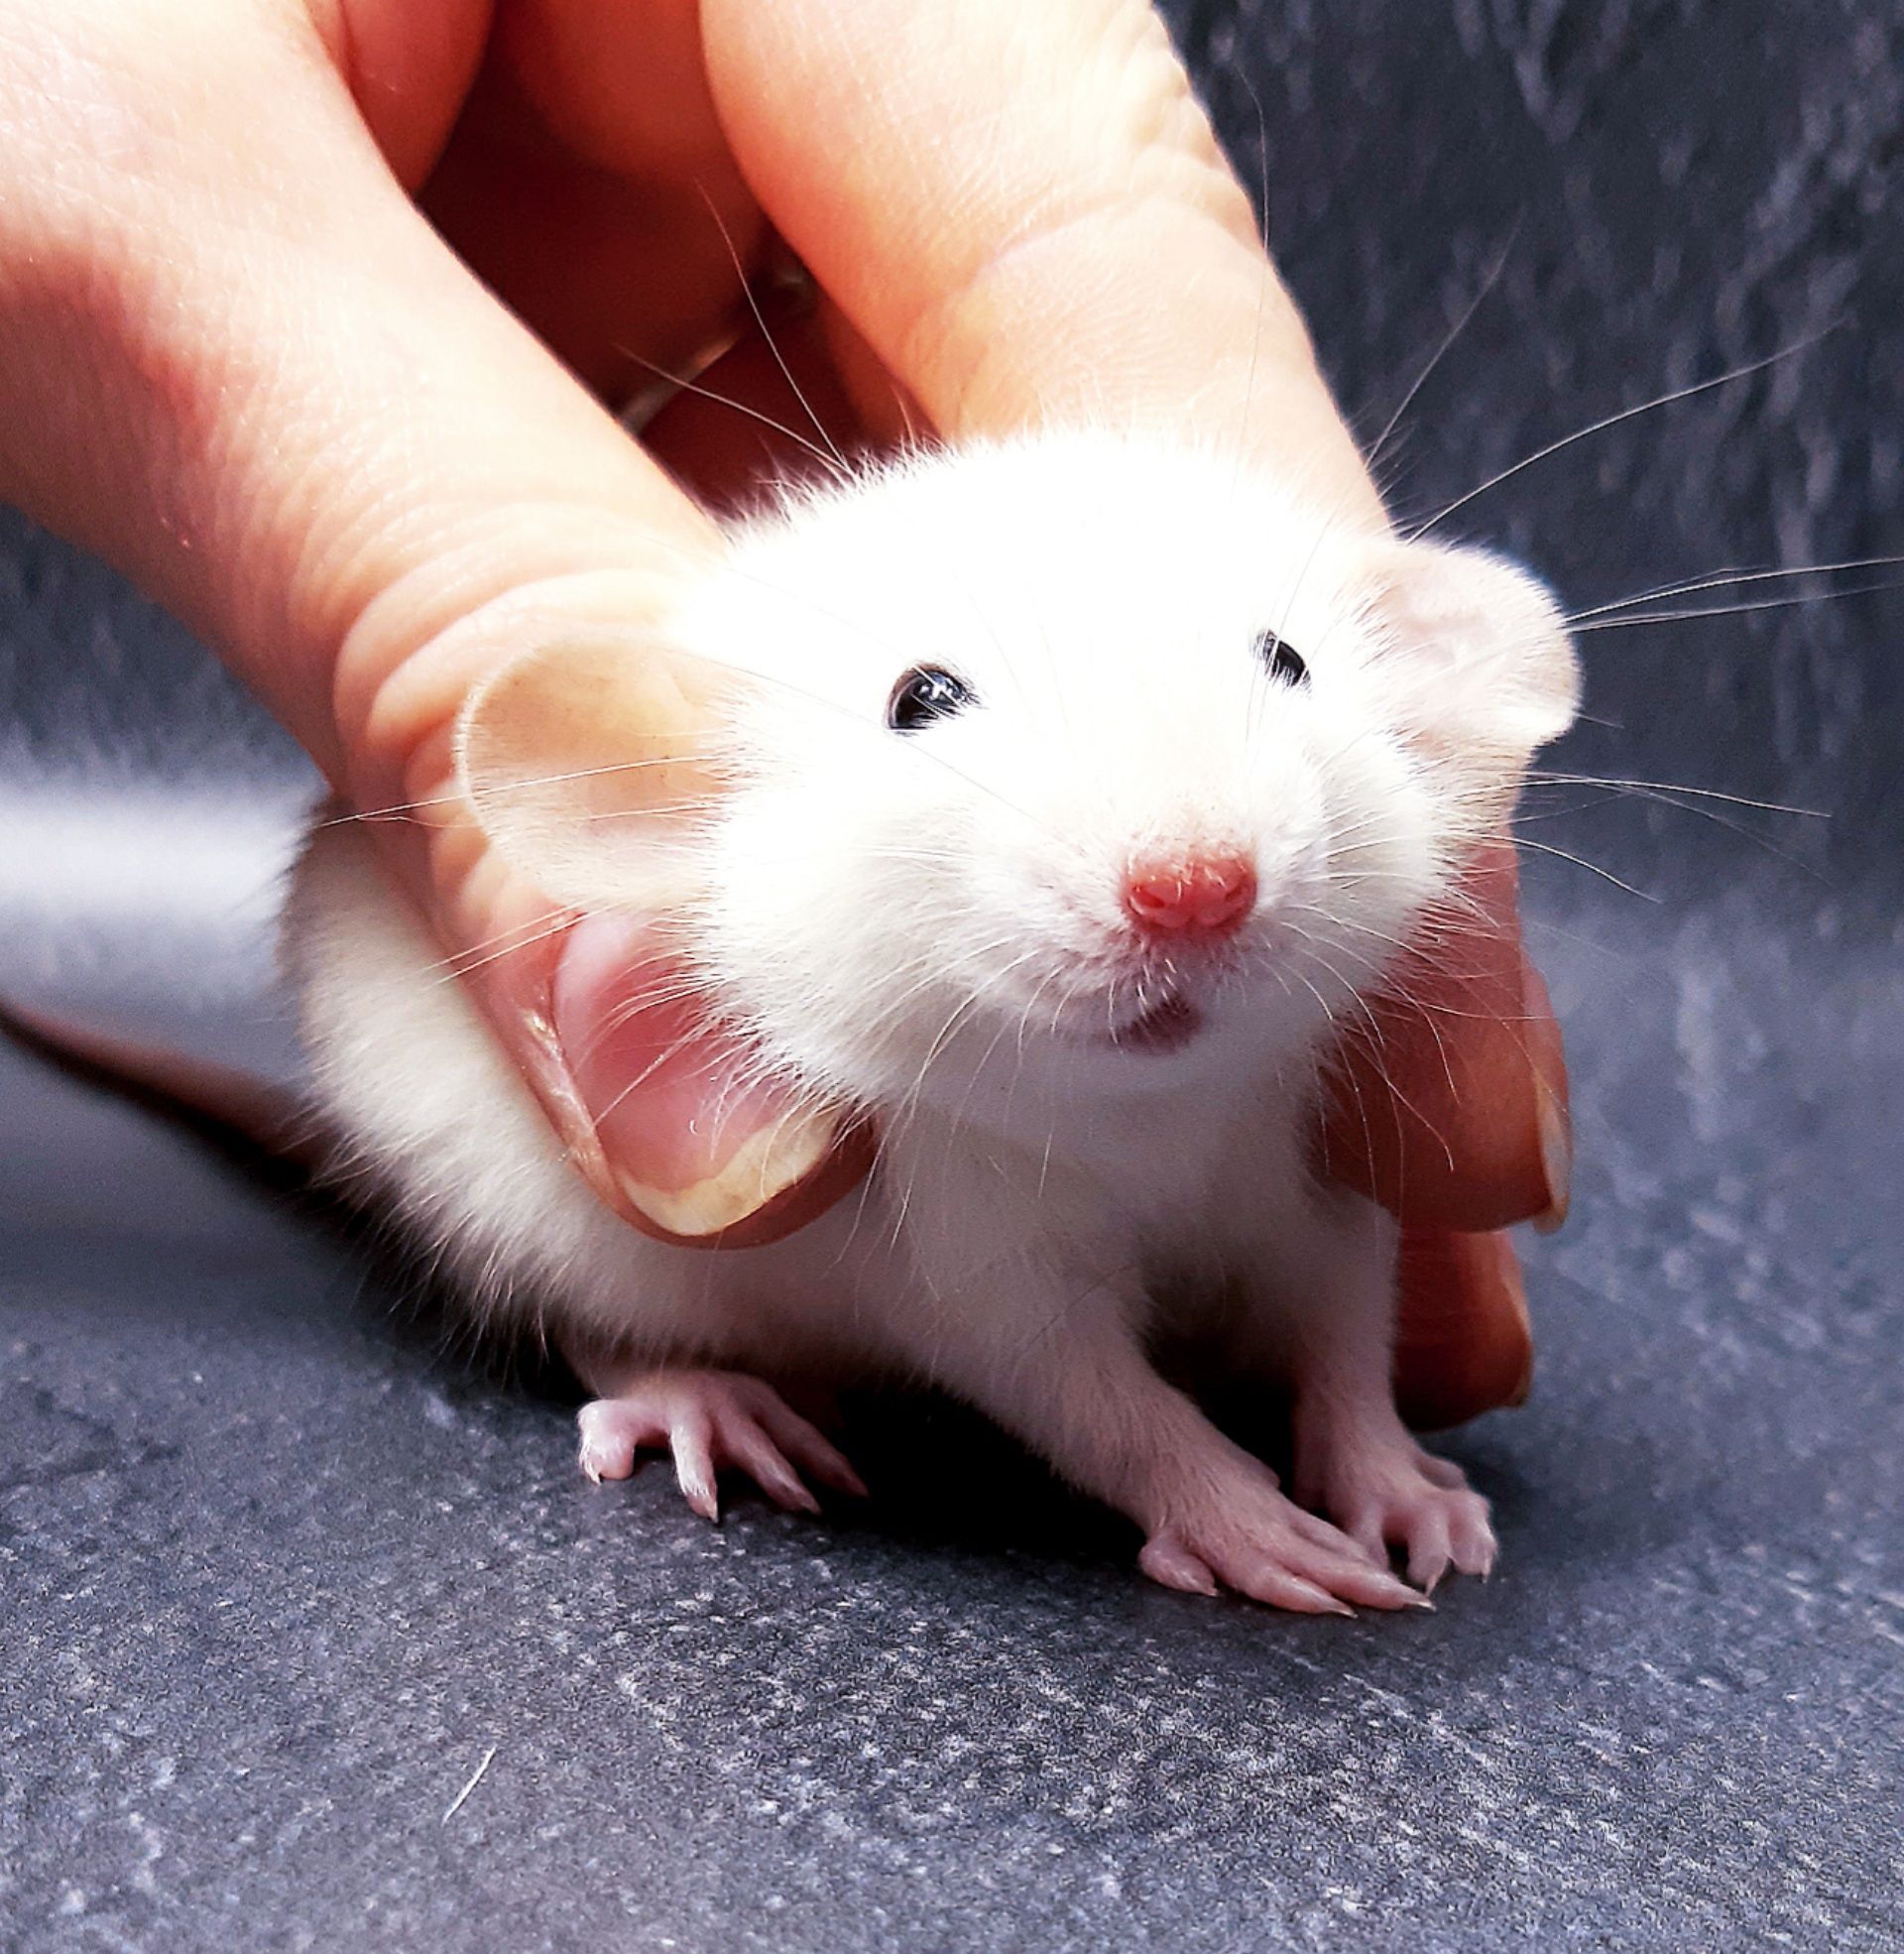 Крысы,крысята,крыски дамбо и клетки,корма,аксессуары